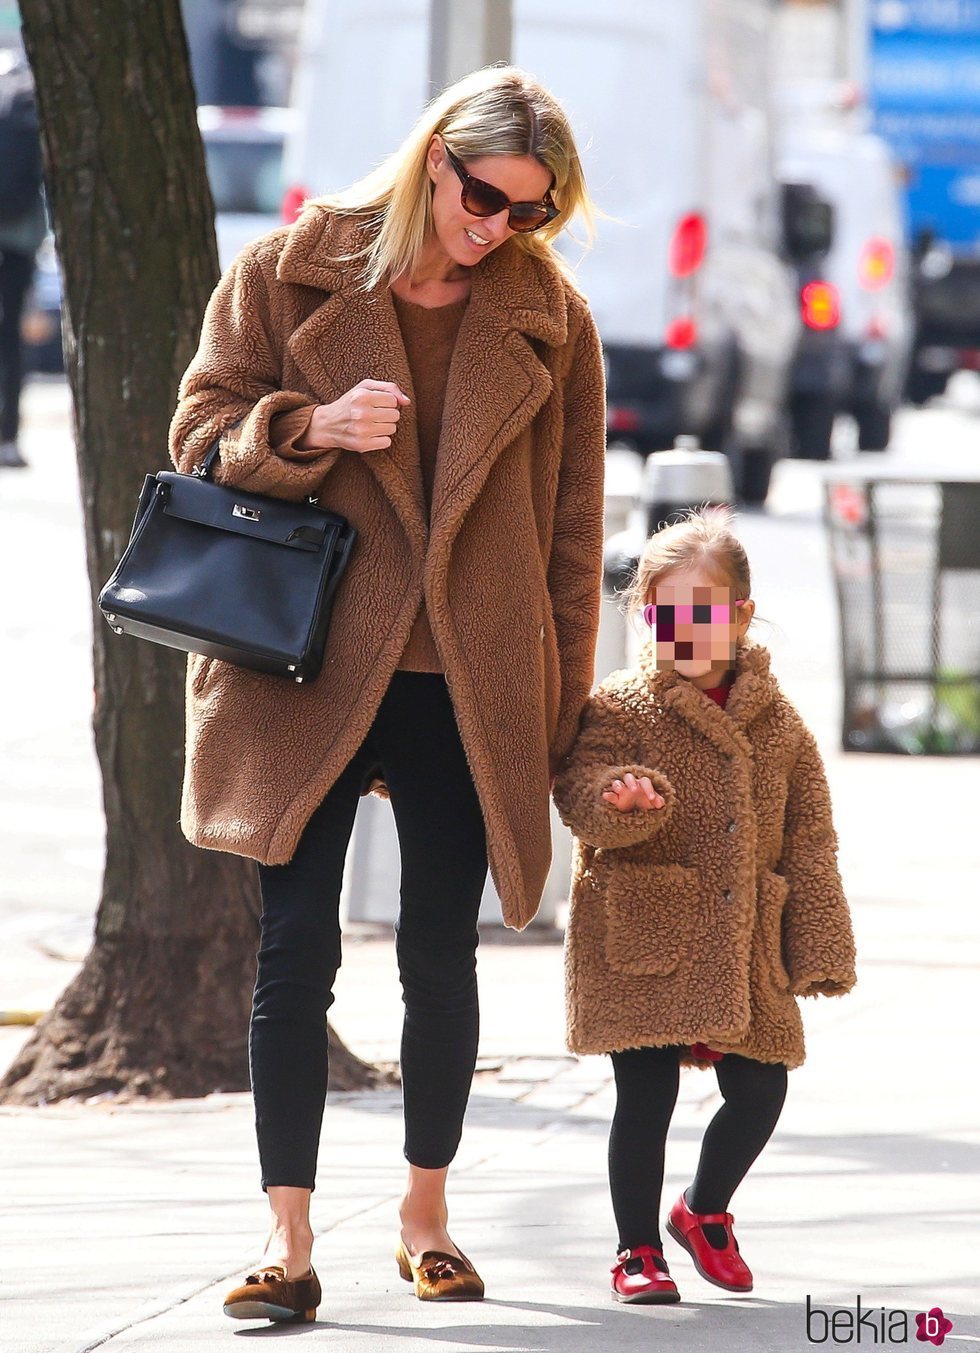 Nicky Hilton y su hija combinadas con un abrigo teddy